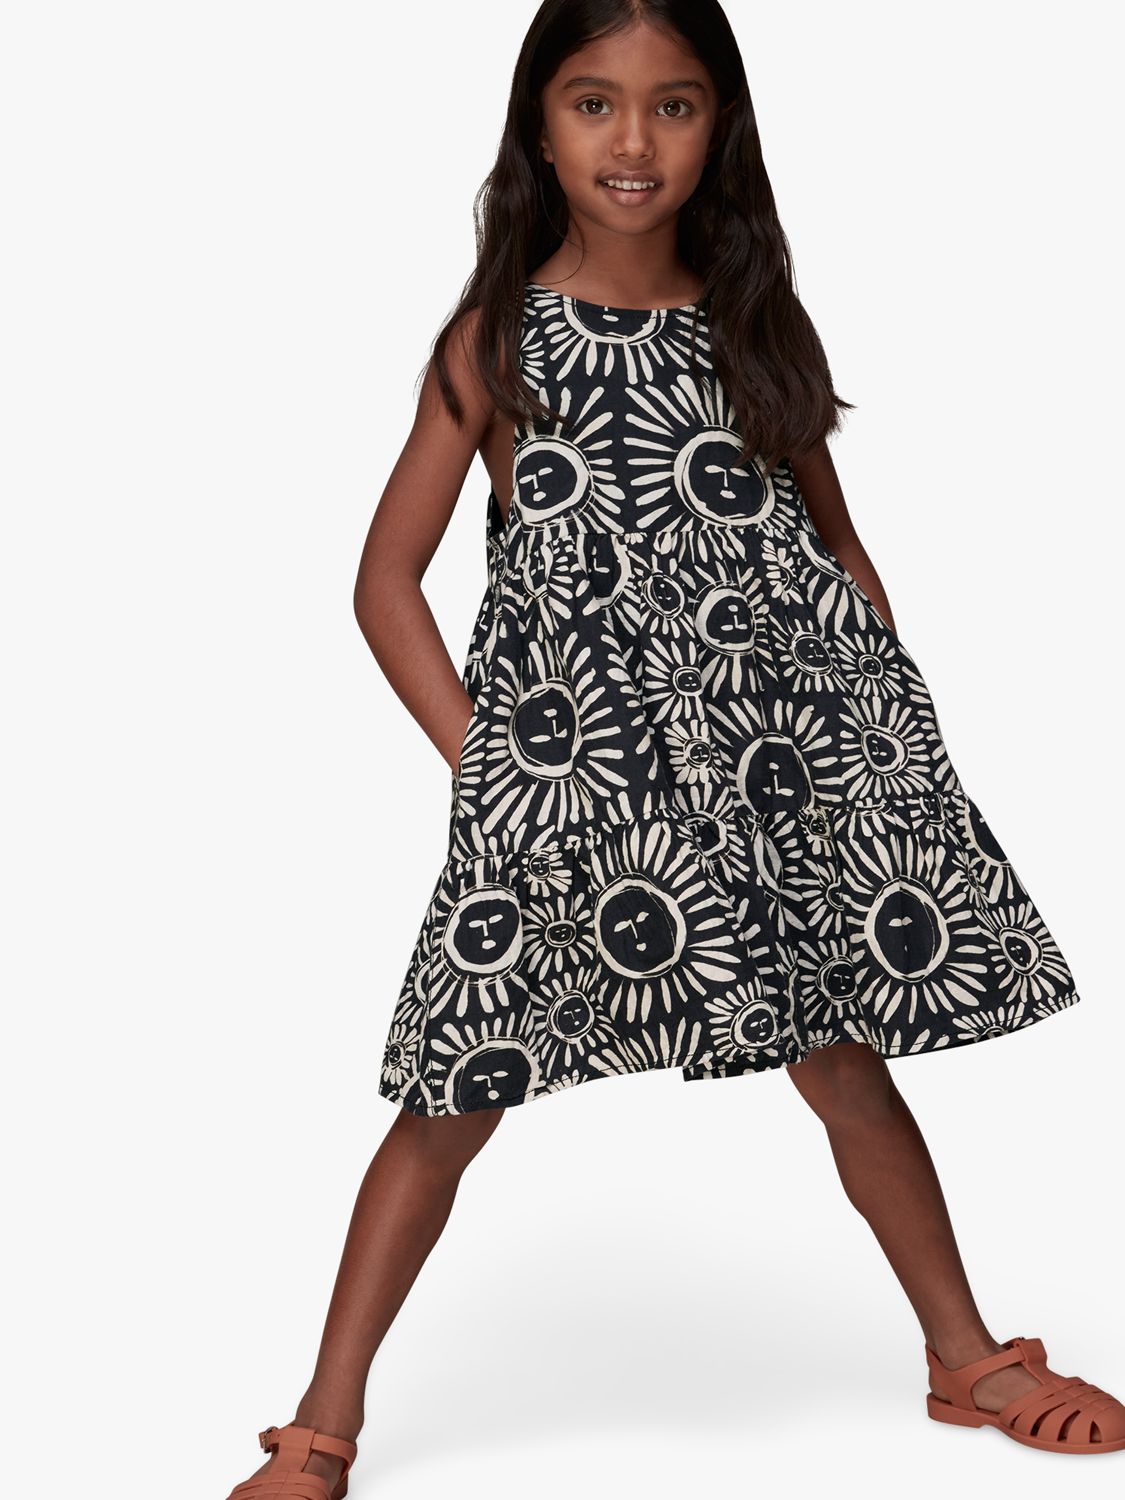 Whistles Kids' Sunman Sunshine Linen Blend Sleeveless Dress, Black/Multi, 4-5 years